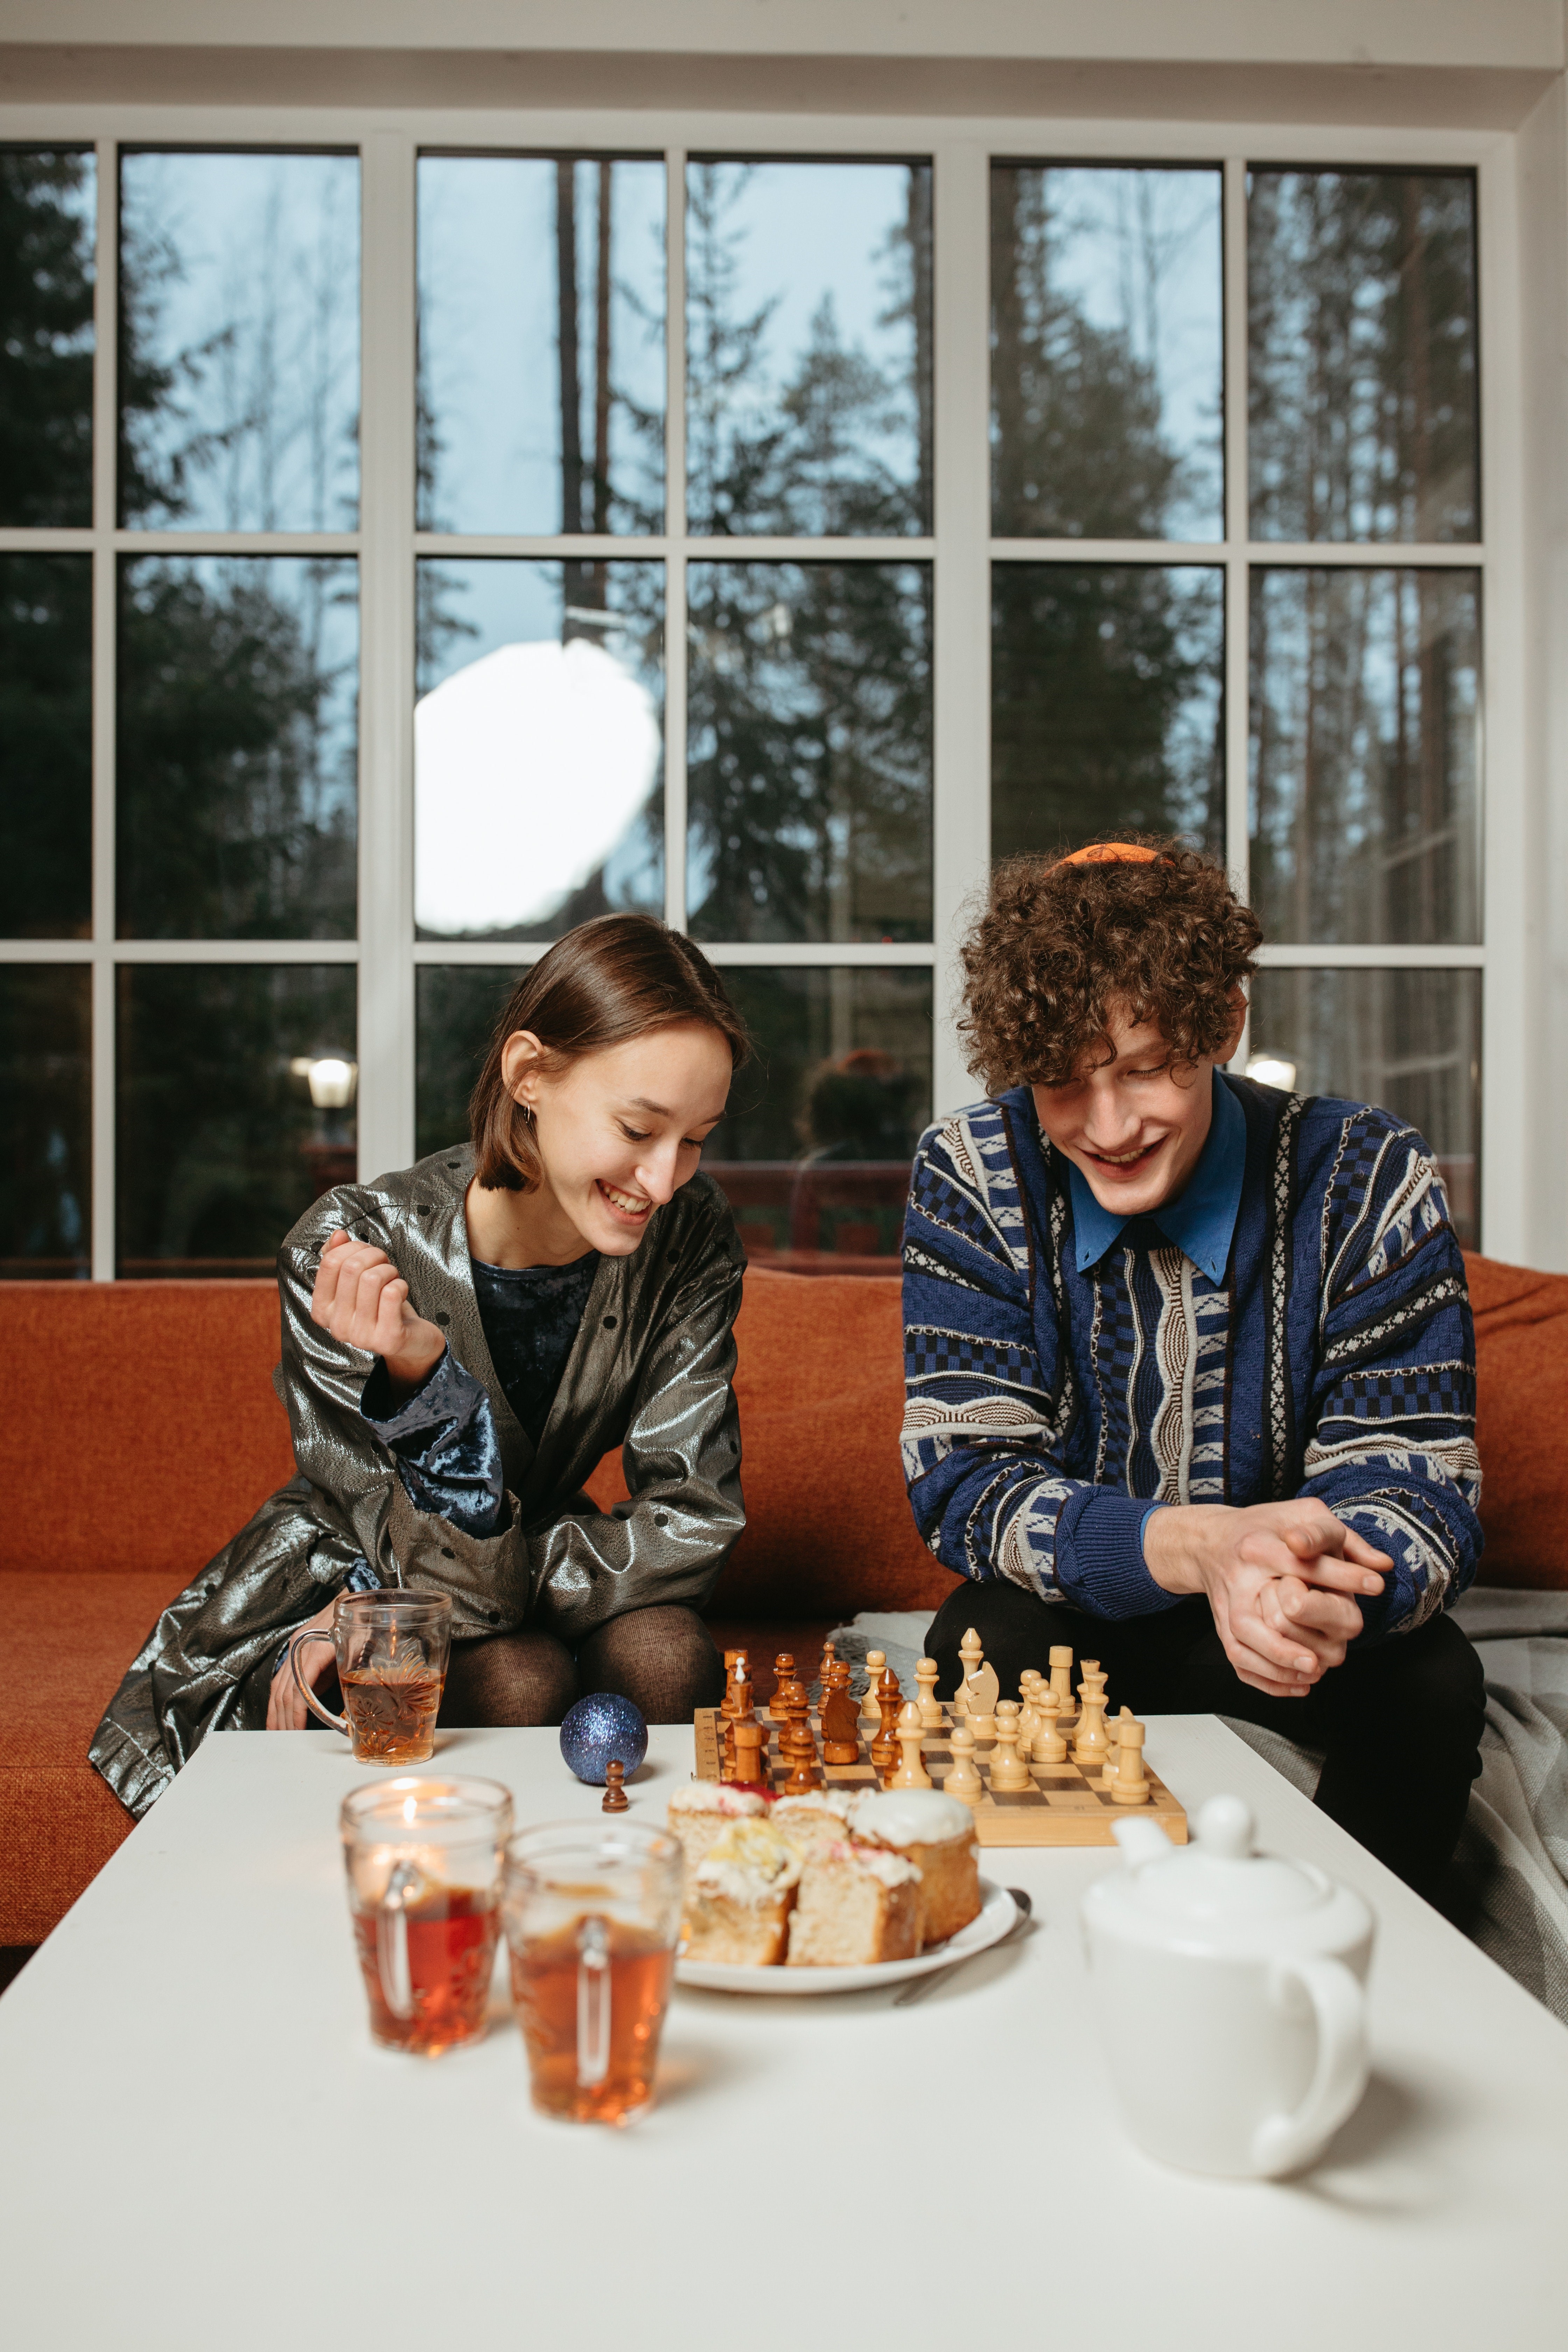 To personer spiller skak. Foto: Pexels.com